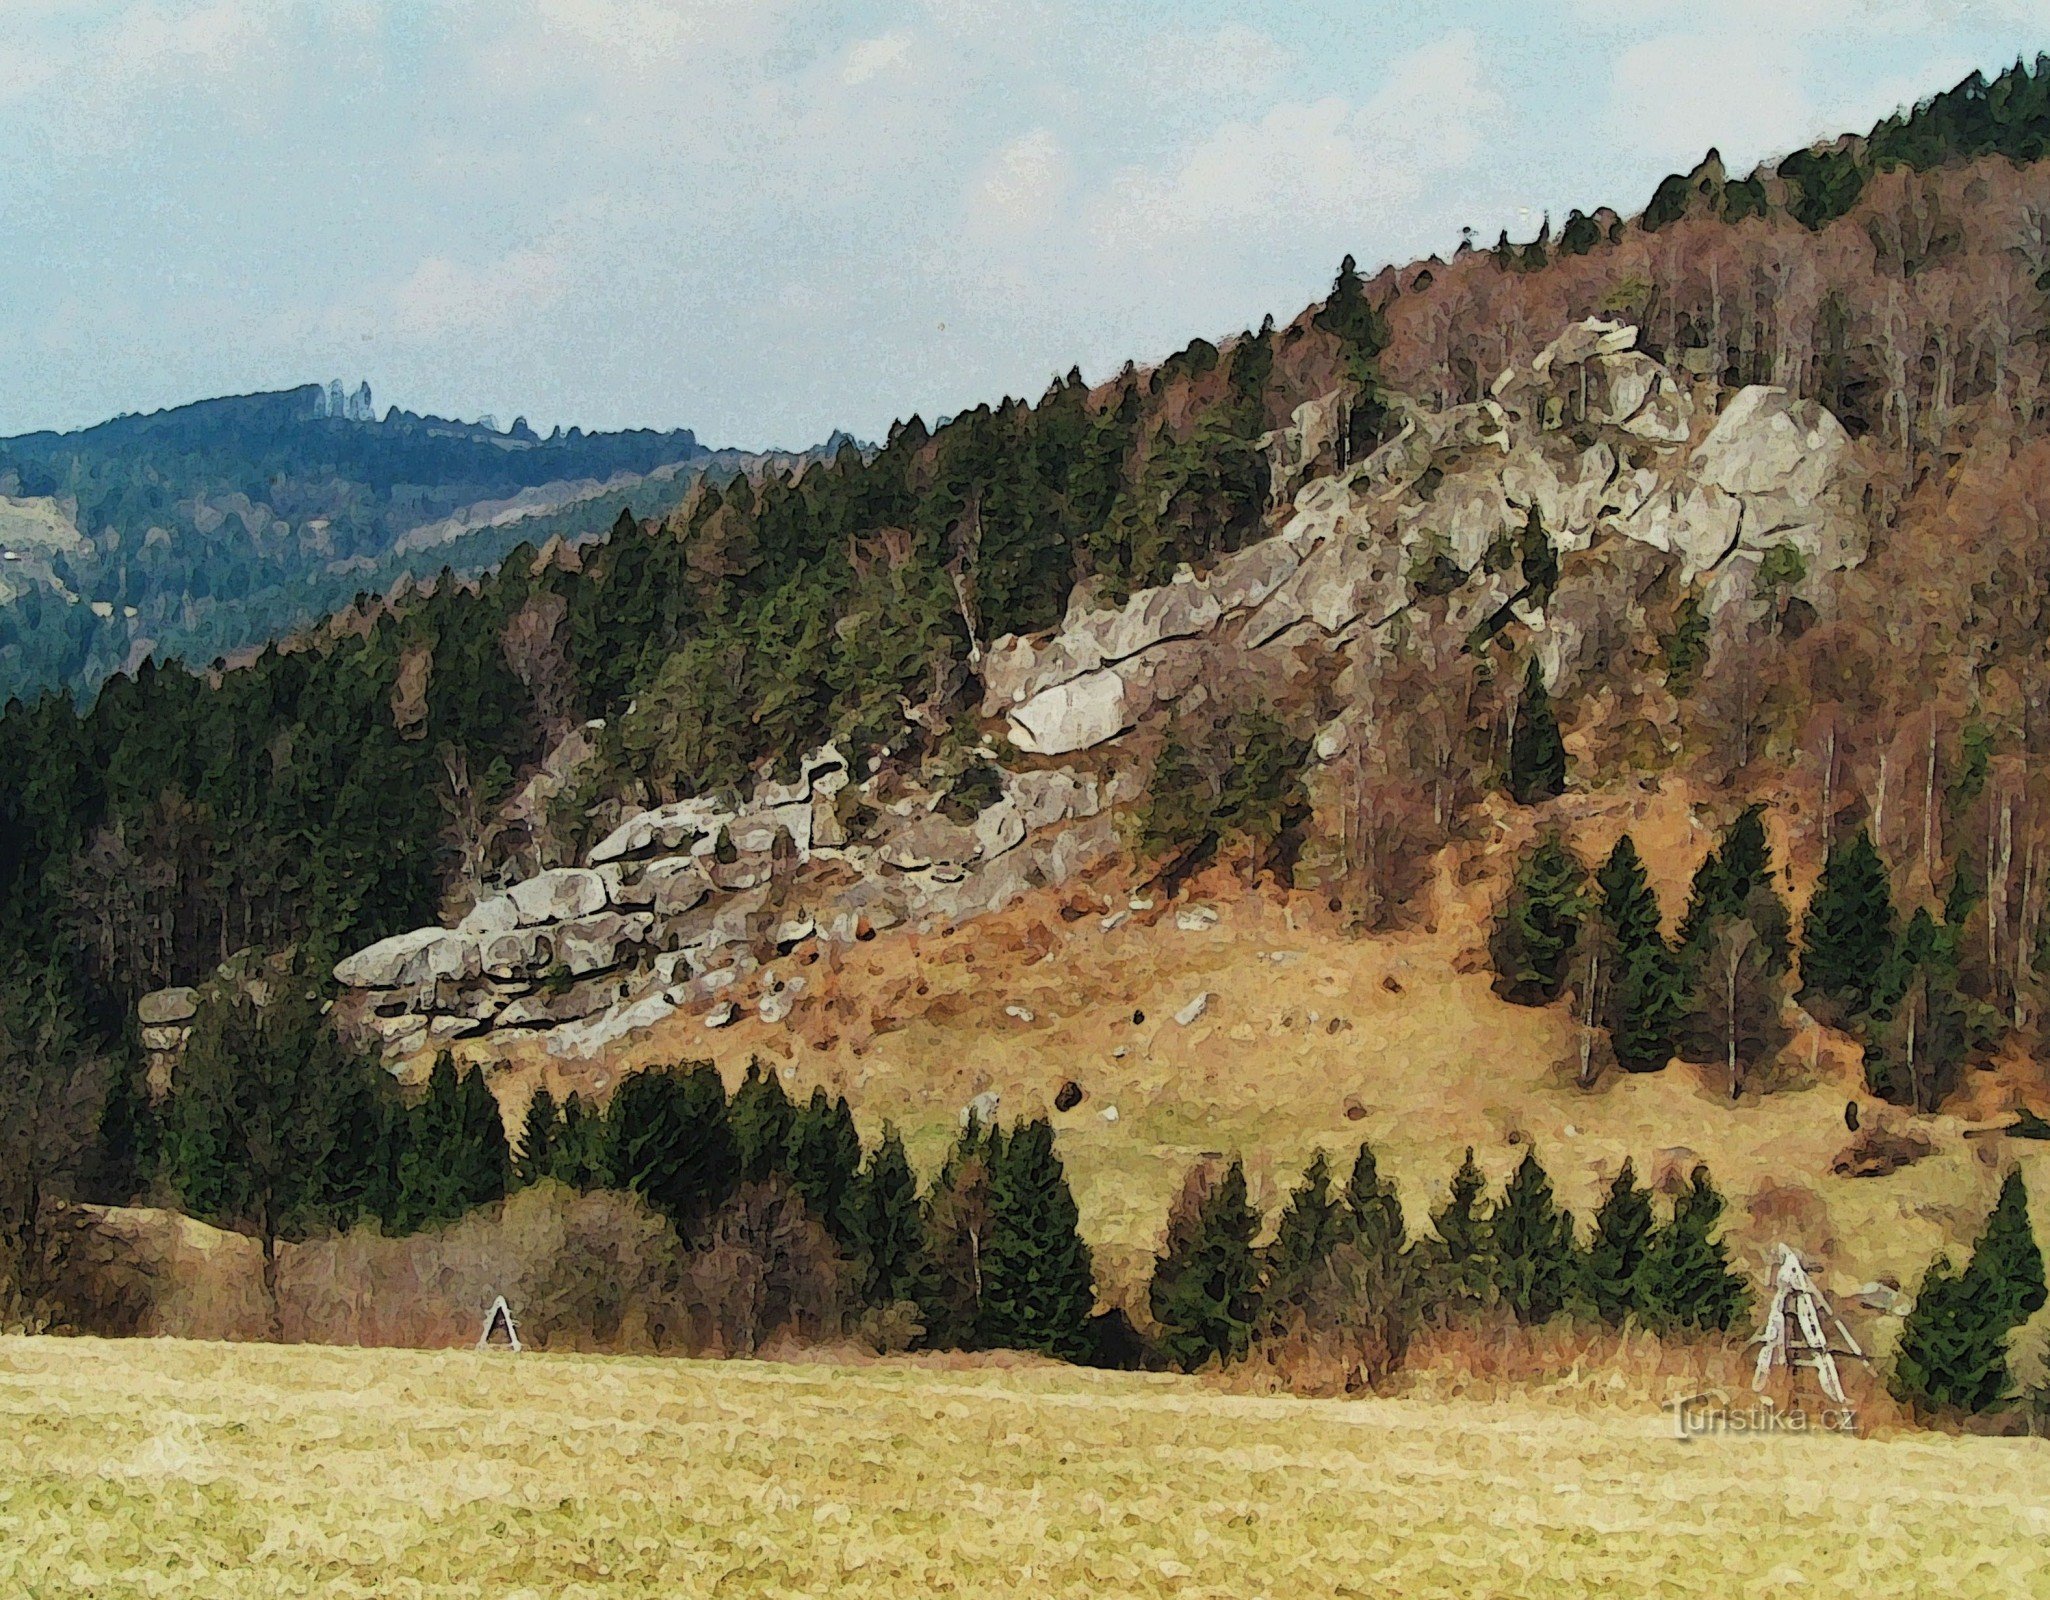 LÍC - Main rocks from Pulčín pastures